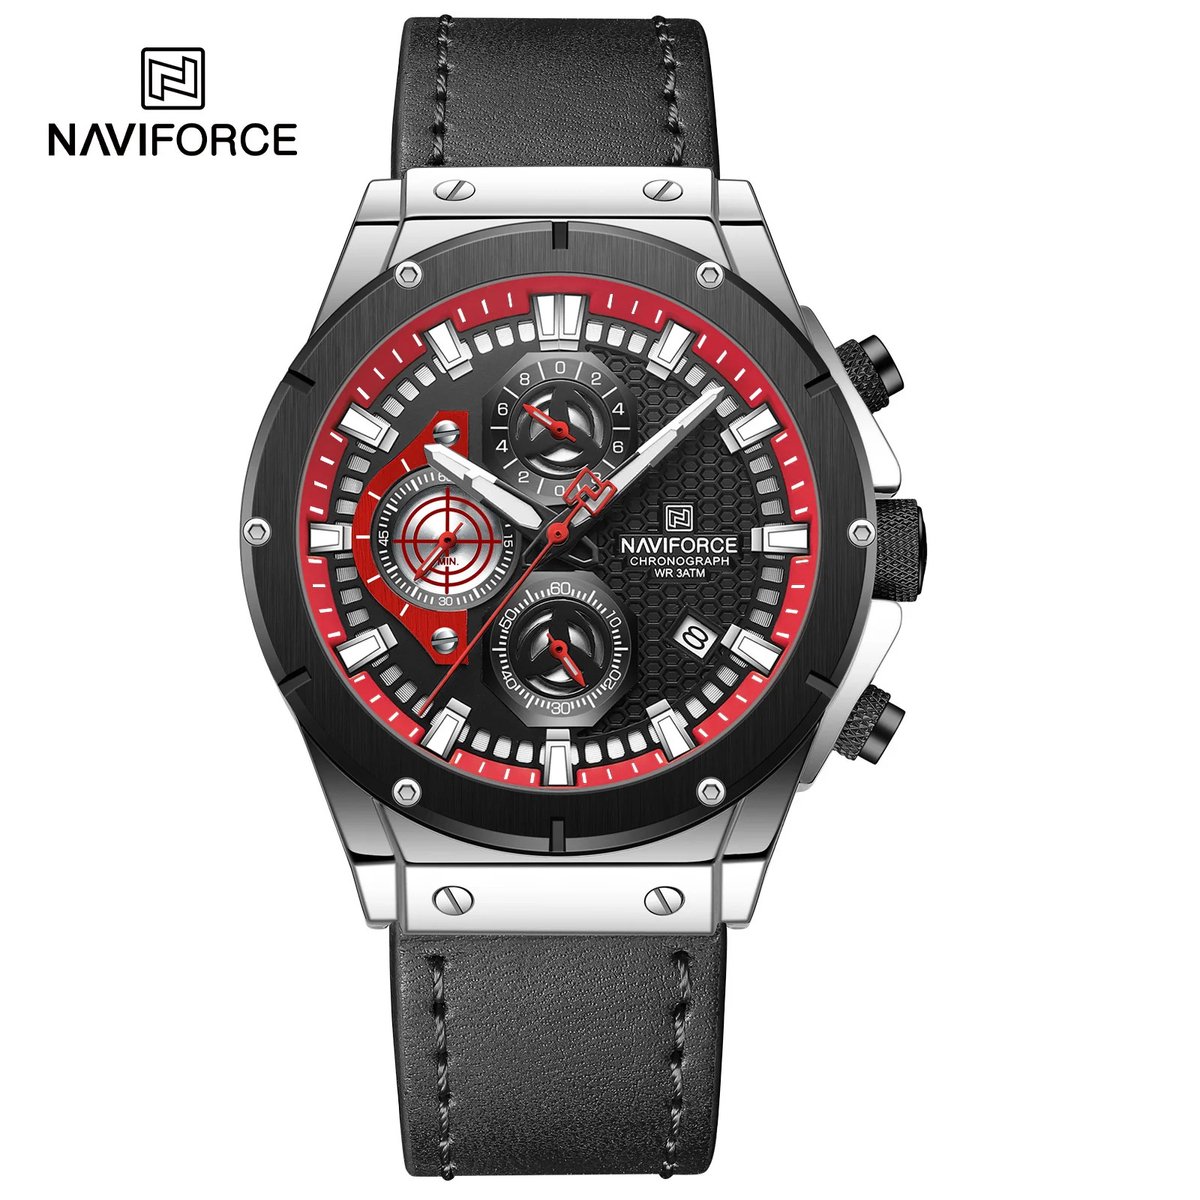 NAVIFORCE horloge voor mannen, met zwarte lederen polsband, zwart en rode horlogekast en grijze wijzerplaat met in het donker oplichtende wijzers ( model 8027L SBB ), verpakt in een mooie geschenkdoos